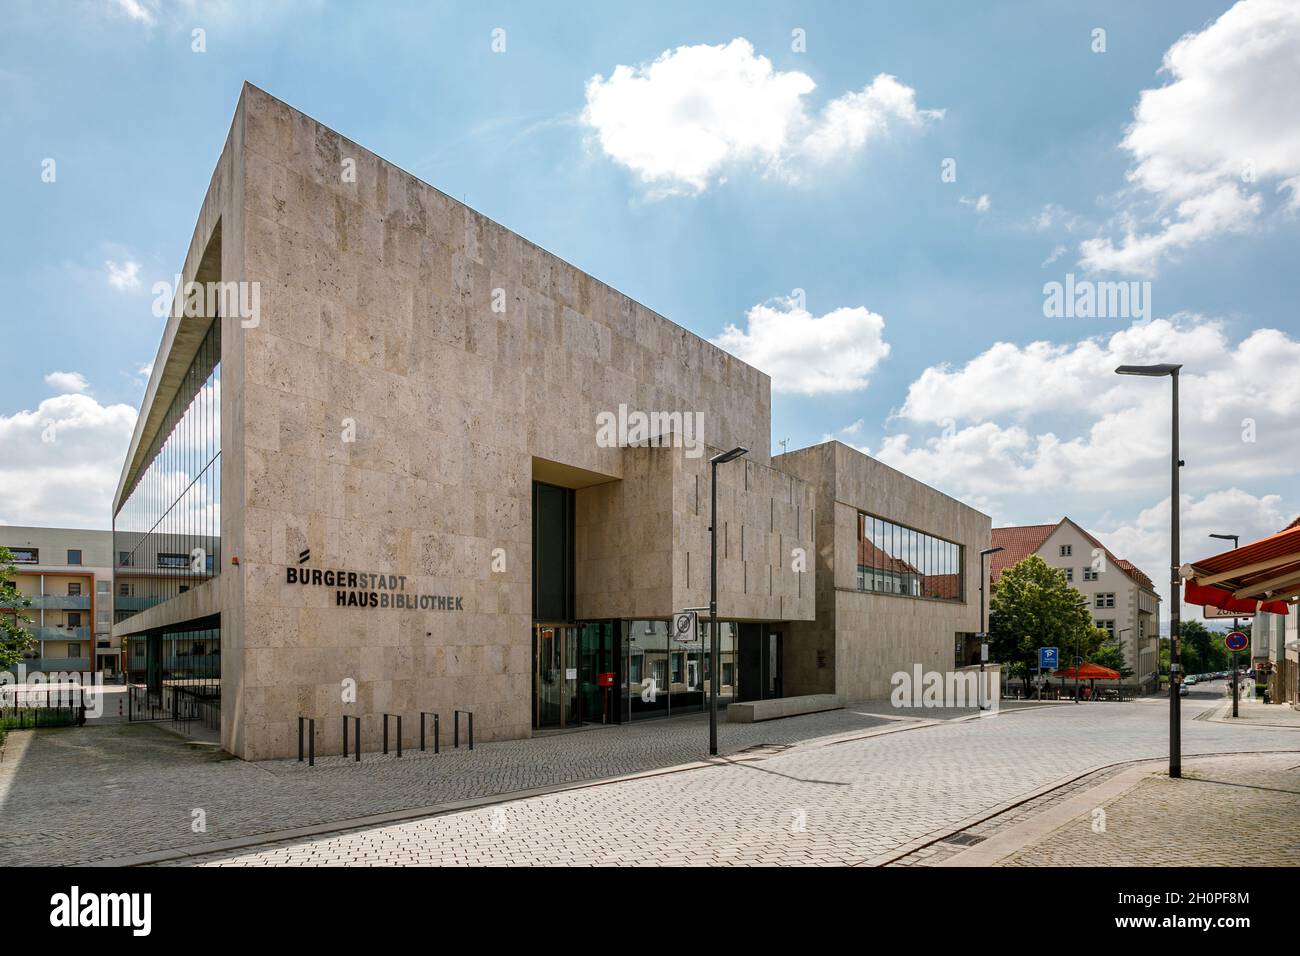 Centro comunitario Nordhausen, edificio multifuncional con información, cultura, centro educativo y biblioteca de la ciudad Foto de stock